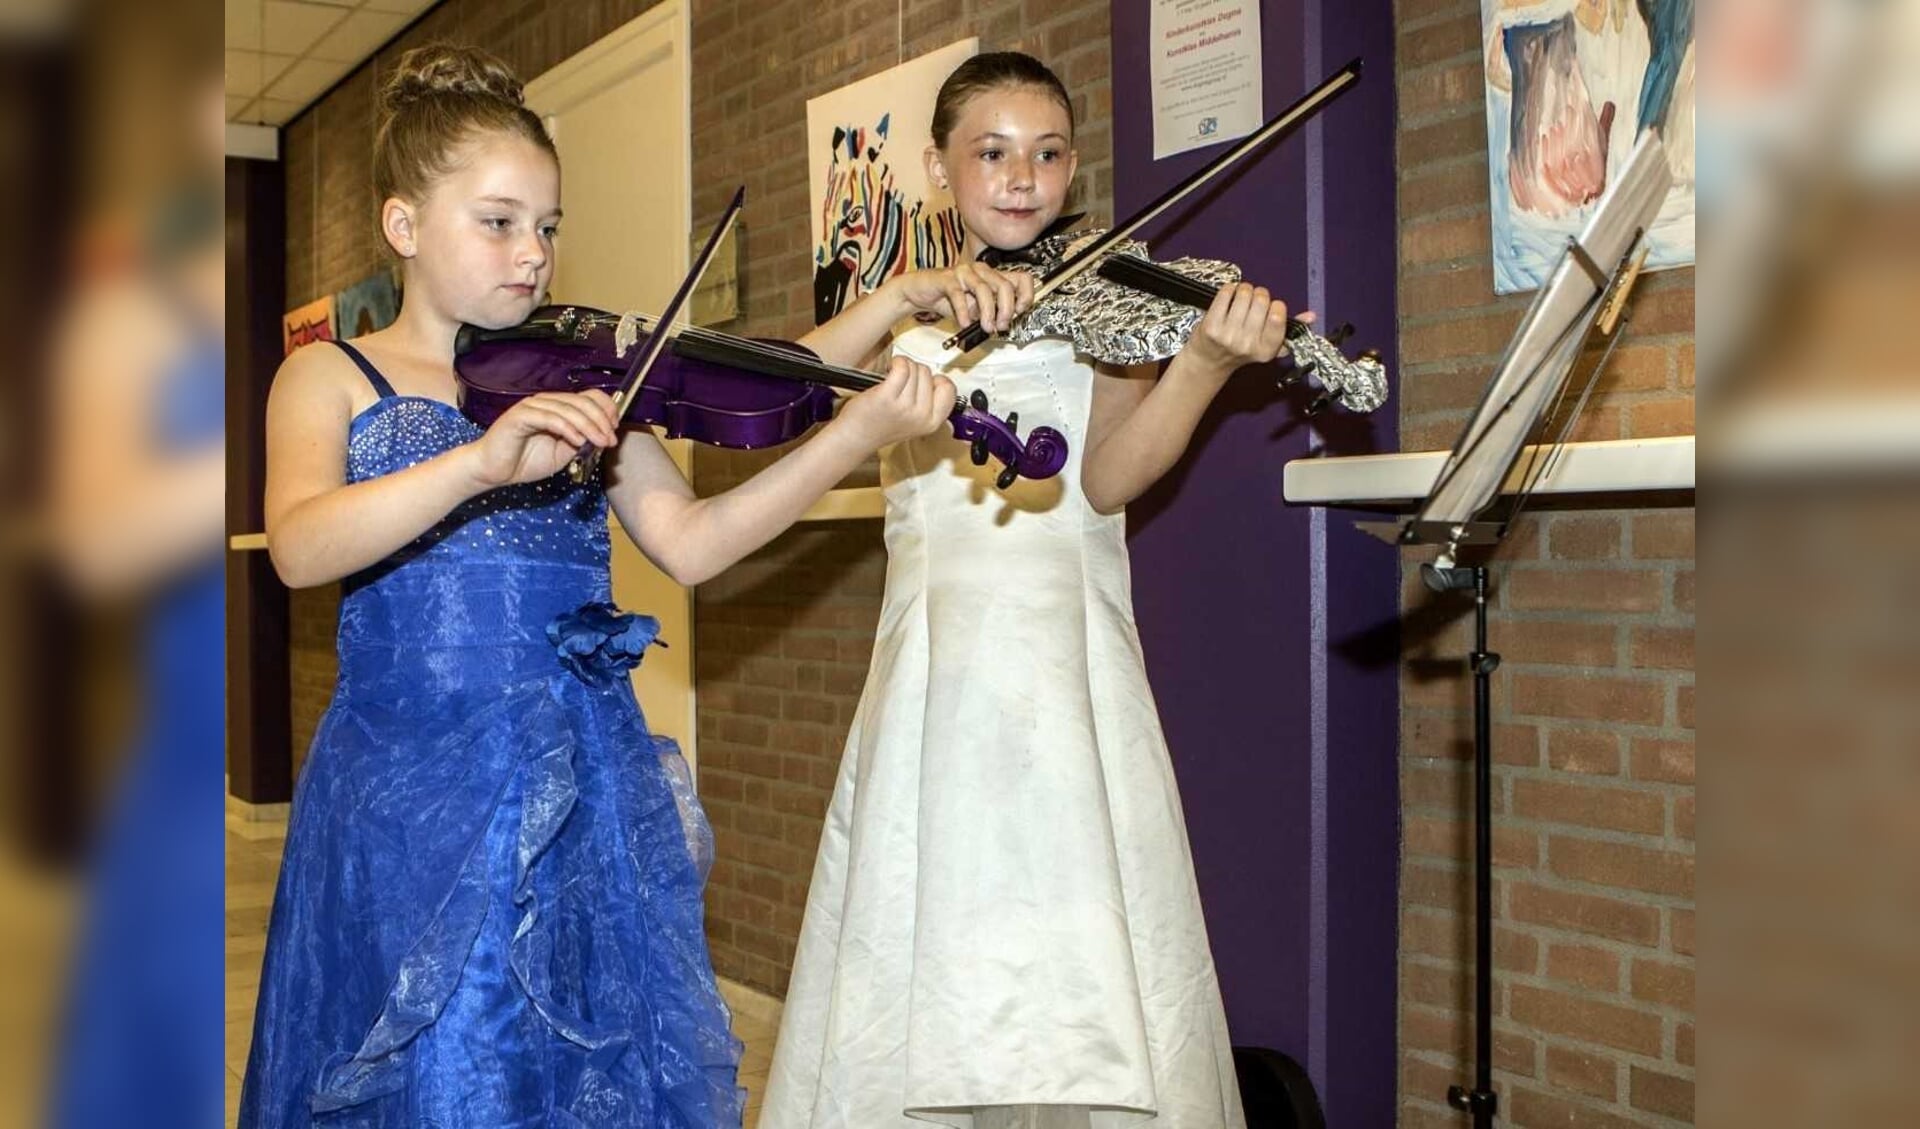 Deze bijzondere expositie werd muzikaal ondersteund op viool door, eveneens twee talentvolle kinderen namelijk Eva van Oudenaarden (10 jaar) en Hannah van Toor (10 jaar)